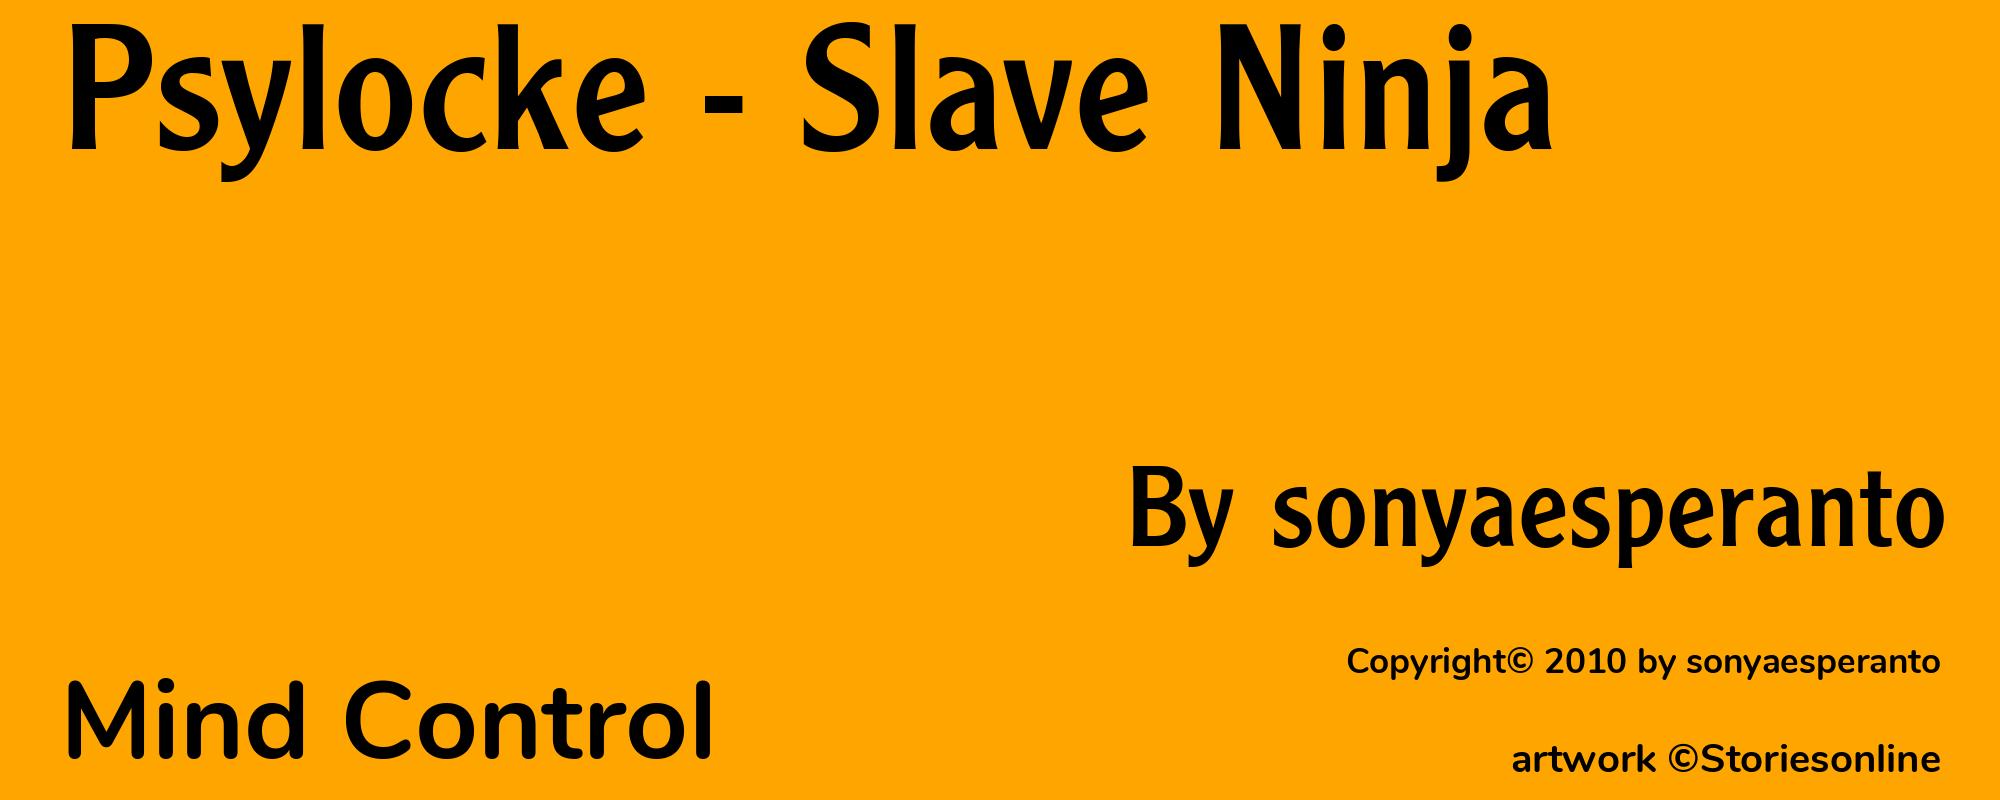 Psylocke - Slave Ninja - Cover